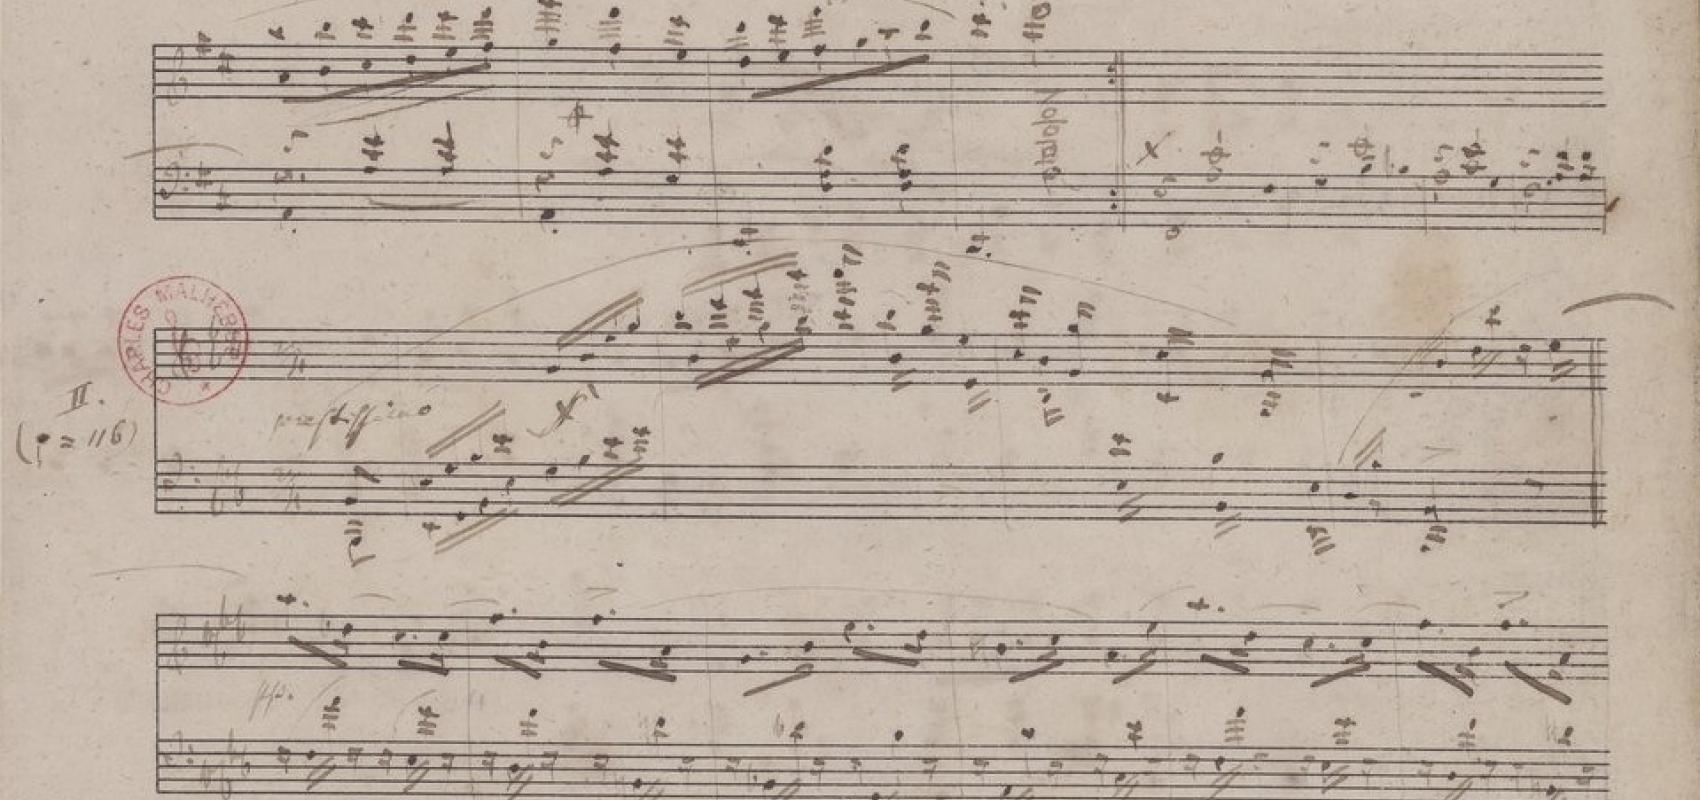 Robert Schumann, « Pappillons », manuscrit autographe, 1832 -  - BnF, département de la Musique